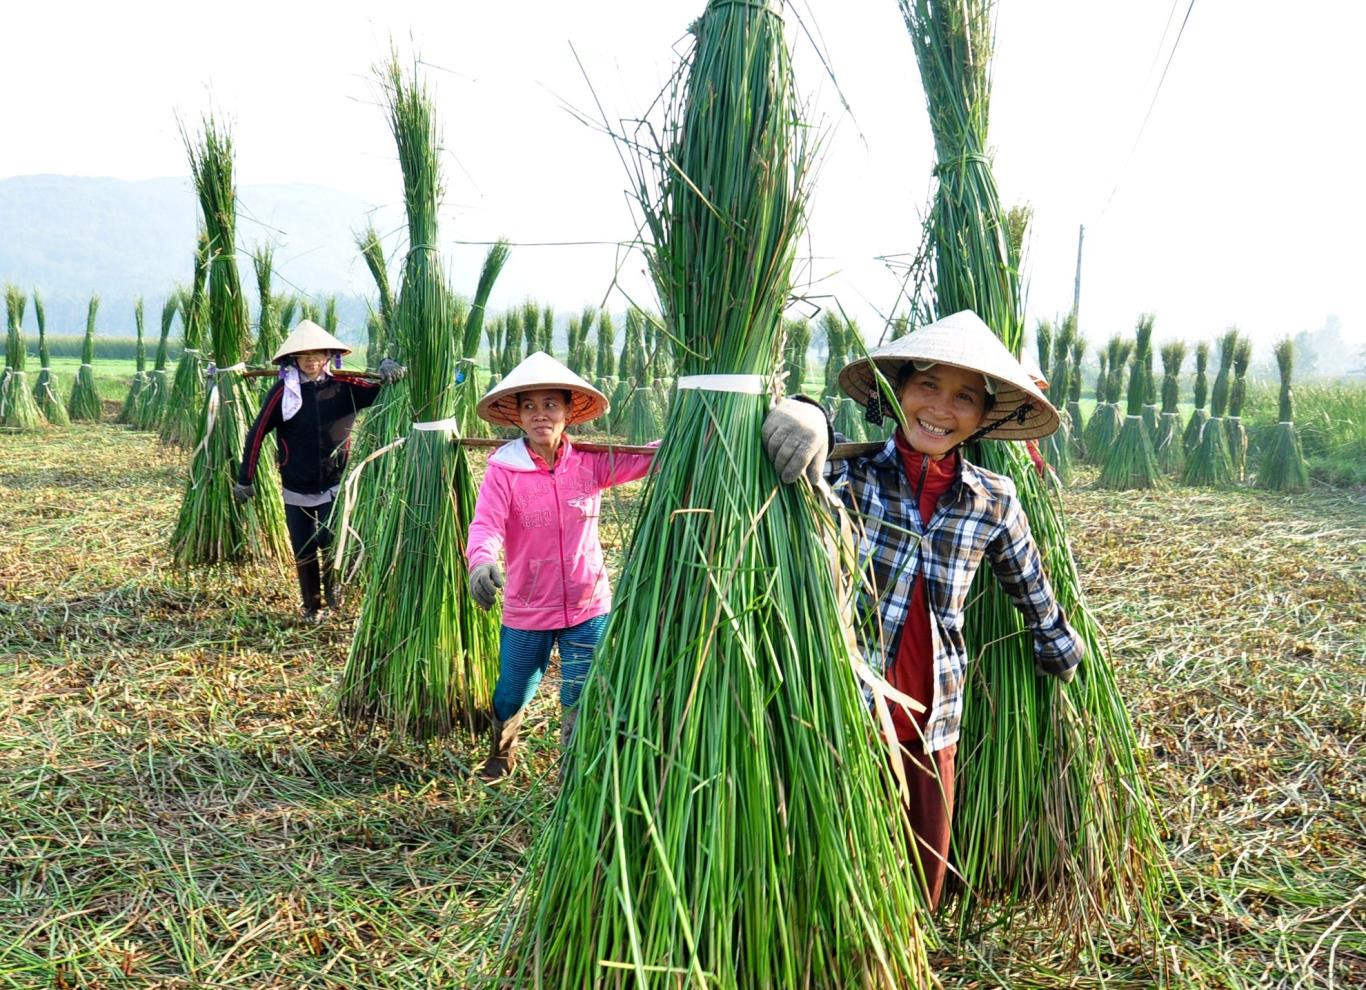 Họ gồng gánh đi giữa đồng cói, vẽ nên bức chân dung hình ảnh phụ nữ Việt Nam quanh năm tần tảo, chịu thương chịu khó. Mặt trời lên cao cũng là lúc họ hoàn tất công việc, nghỉ ngơi trên đồng.   Xem nội dung đầy đủ tại: https://wiki-travel.com.vn/lang-chieu-coi-dep-nhu-coi-mo-o-binh-dinh-v975.php Nguồn: wiki-travel.com.vn